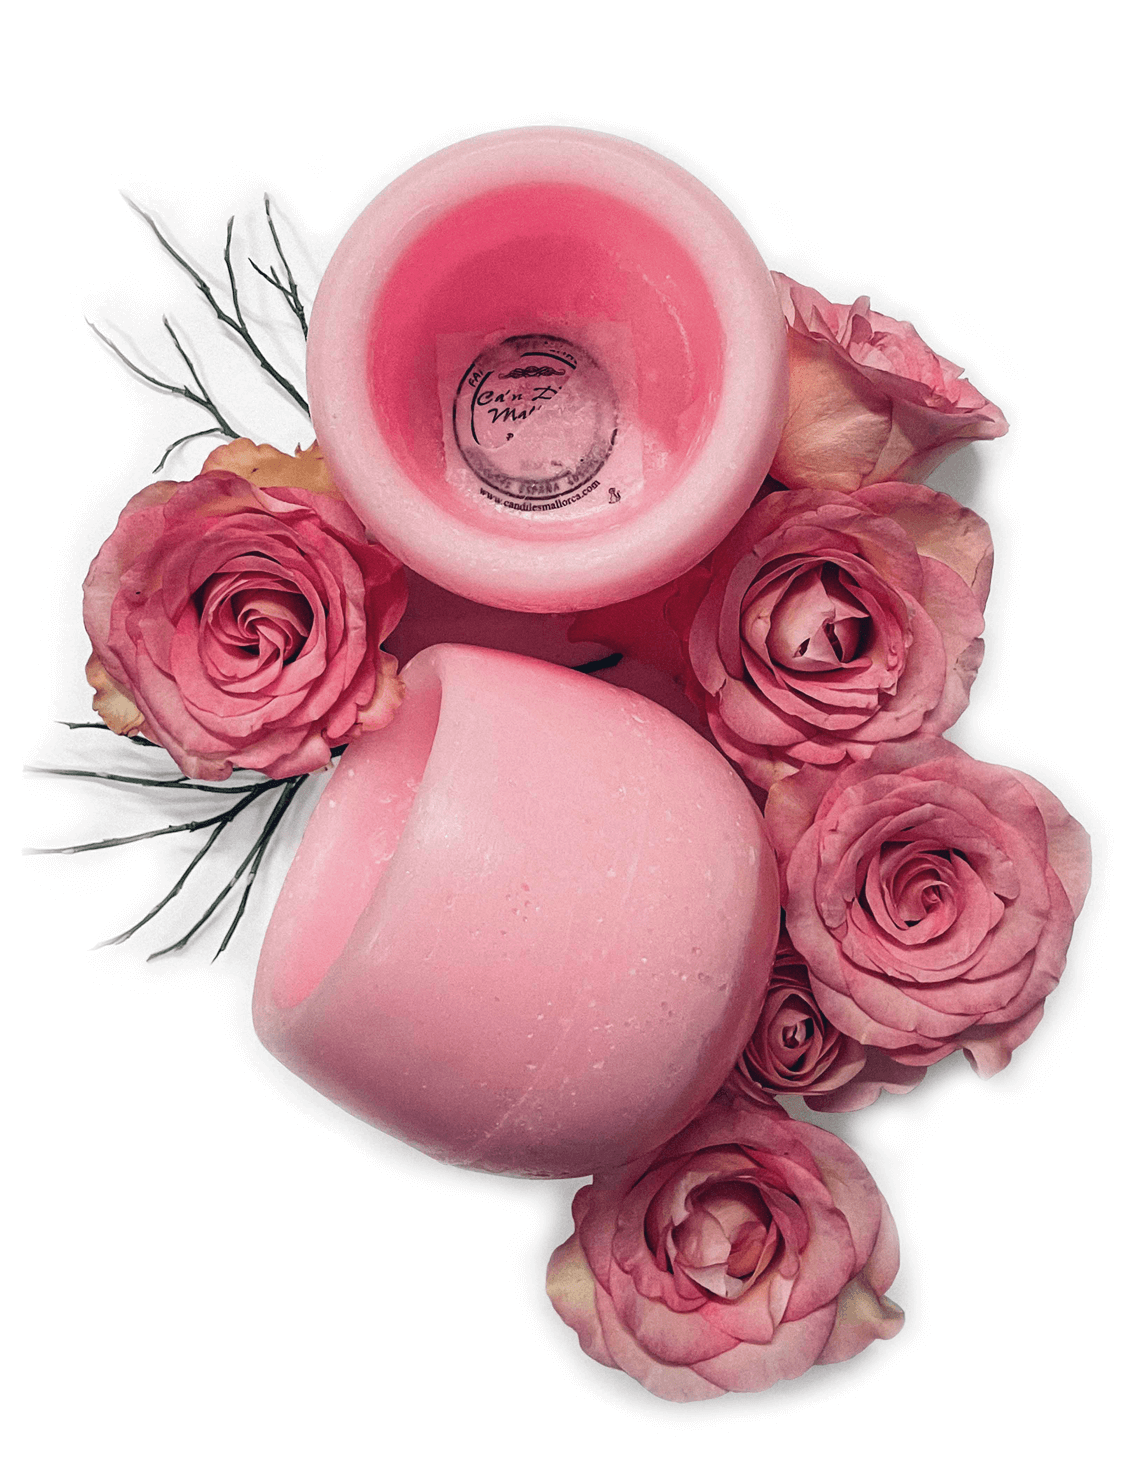 Candiles Duftwachs Produktbild Rose